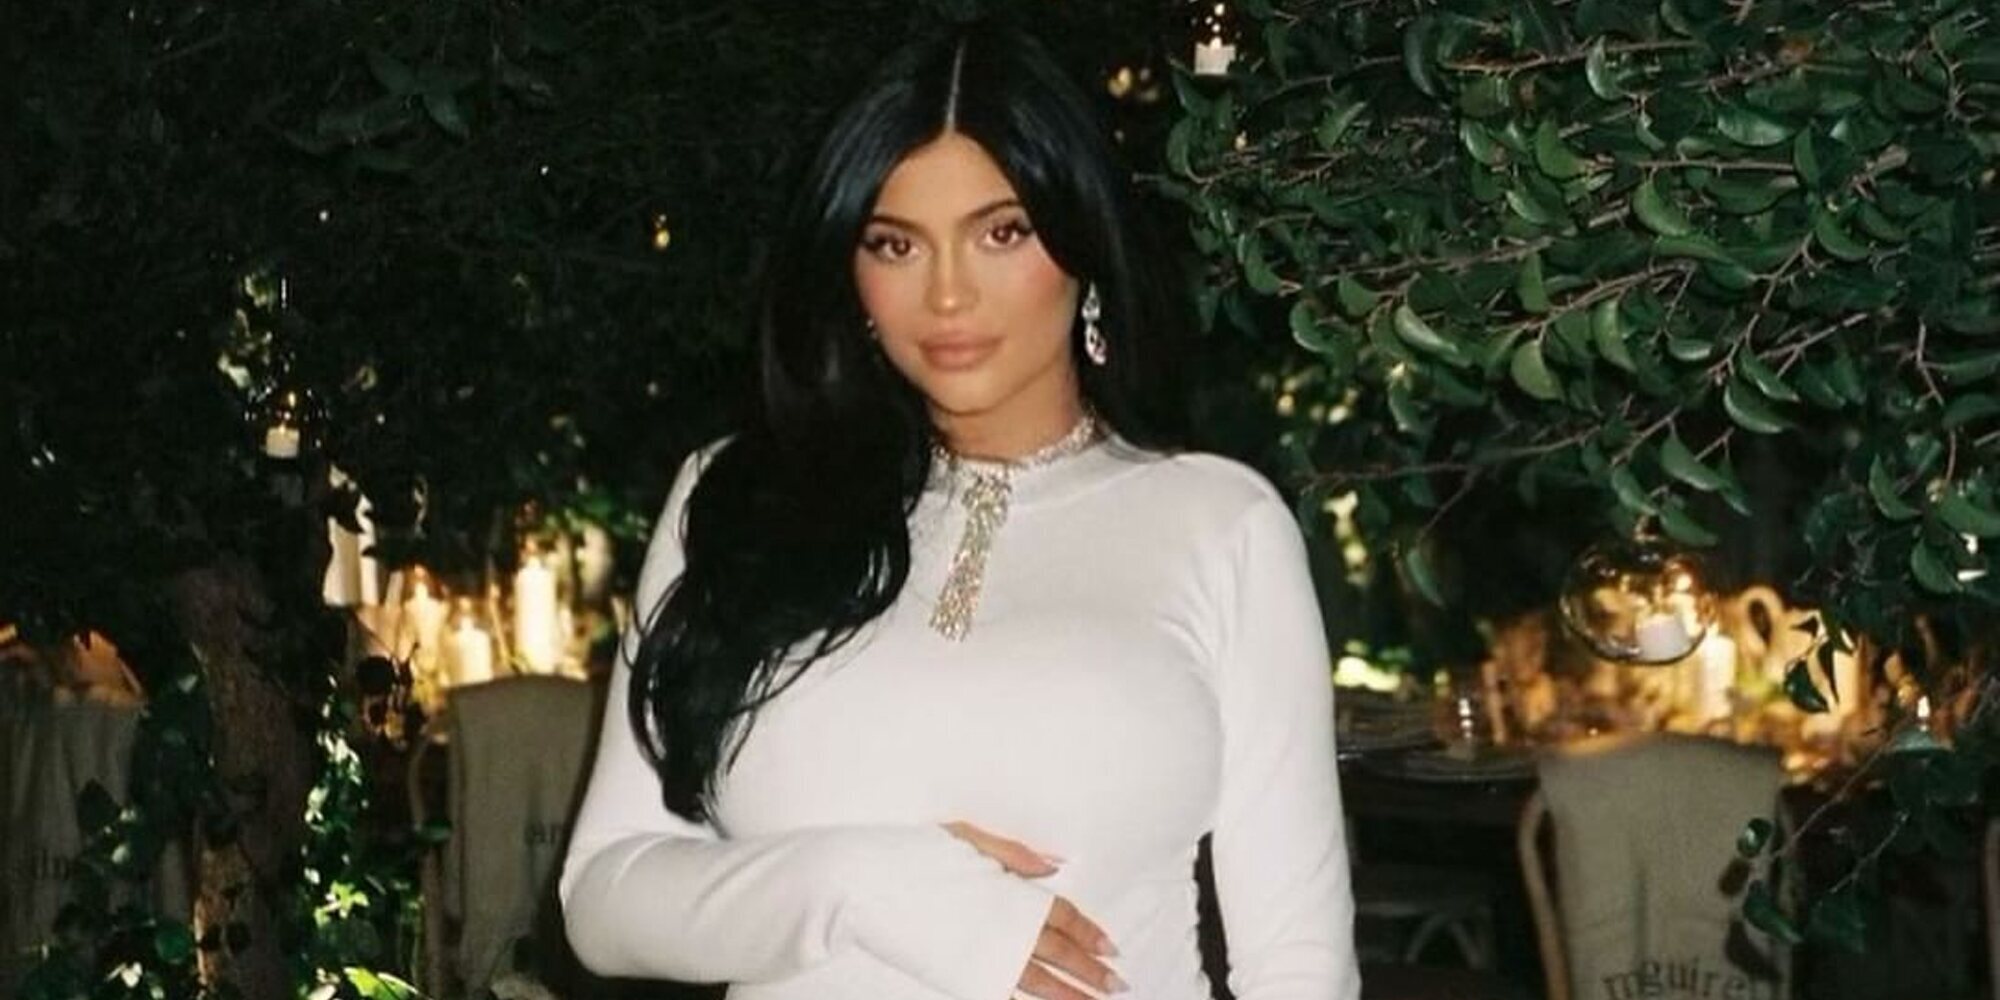 No, Kylie Jenner todavía no ha sido madre, pero hay un detalle que confirma cuándo dará a luz